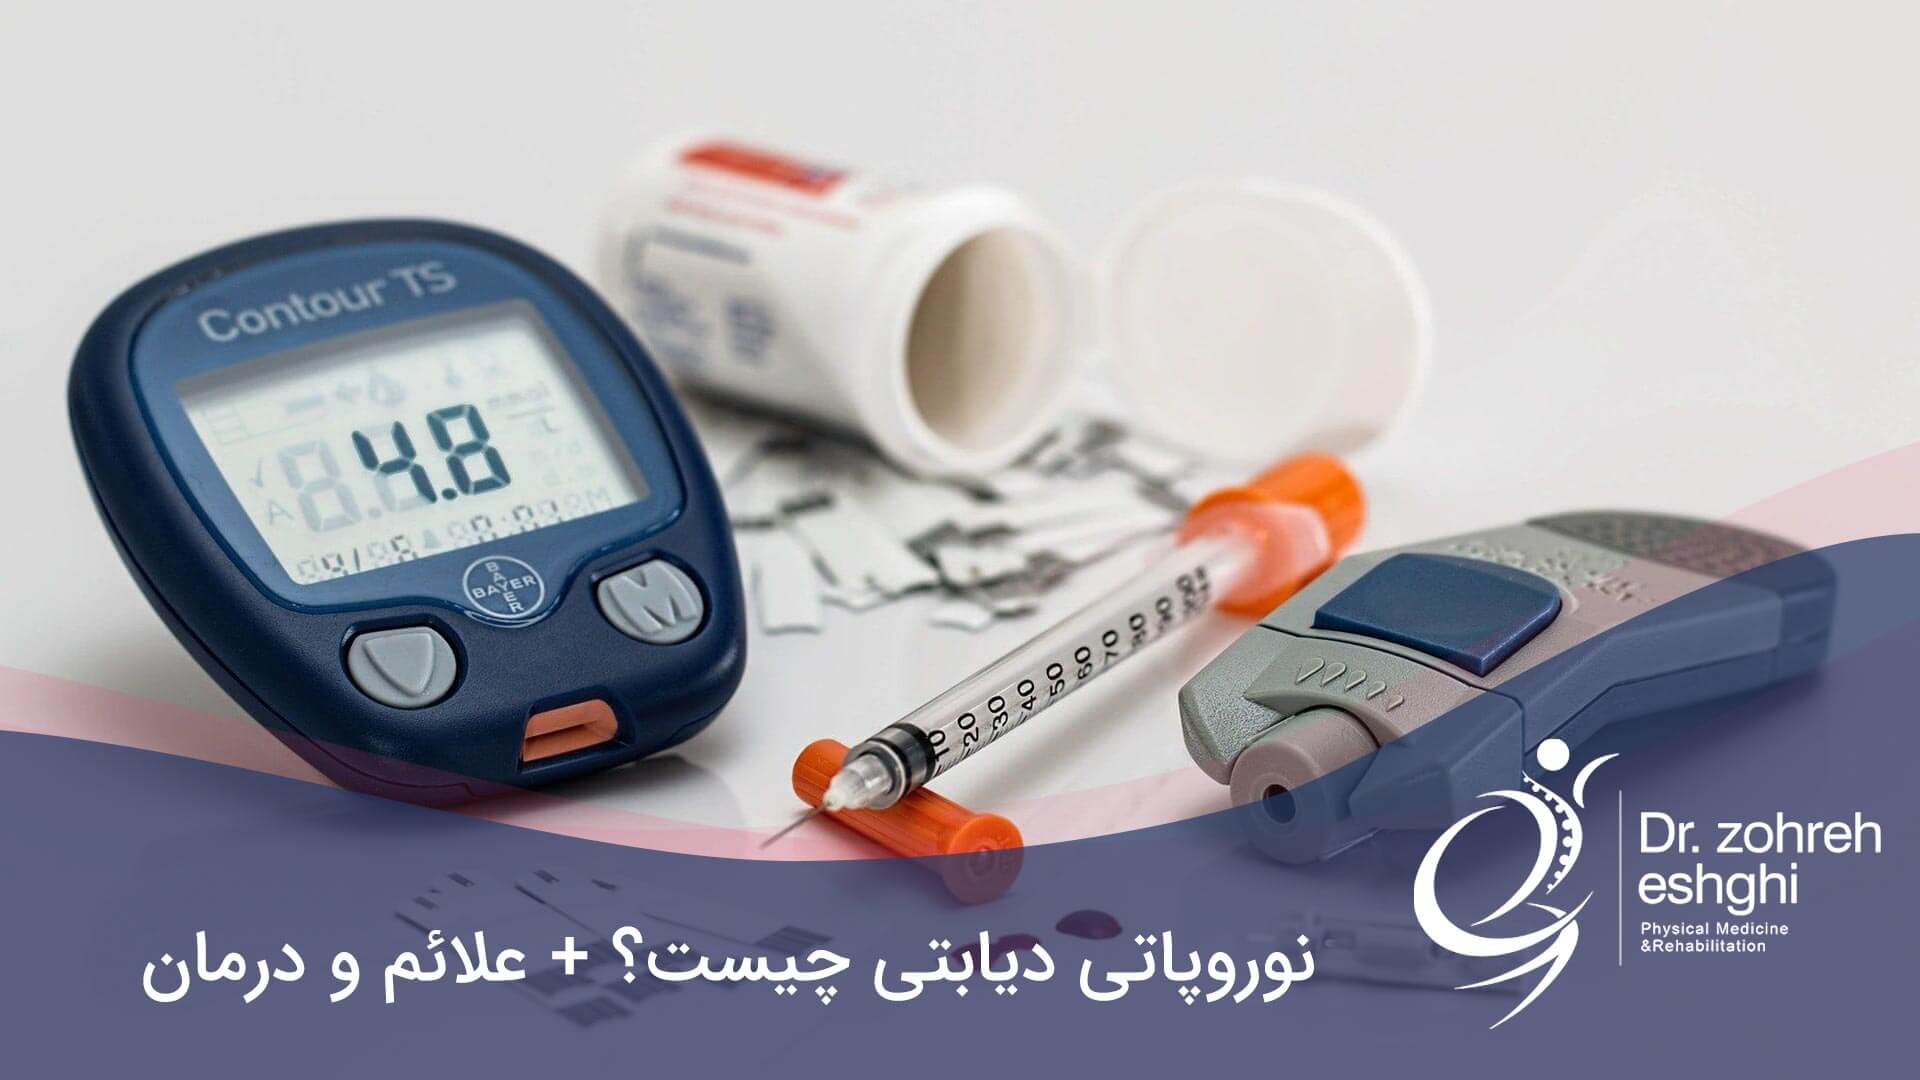 نوروپاتی دیابتی چیست؟ + علائم و درمان در شیراز